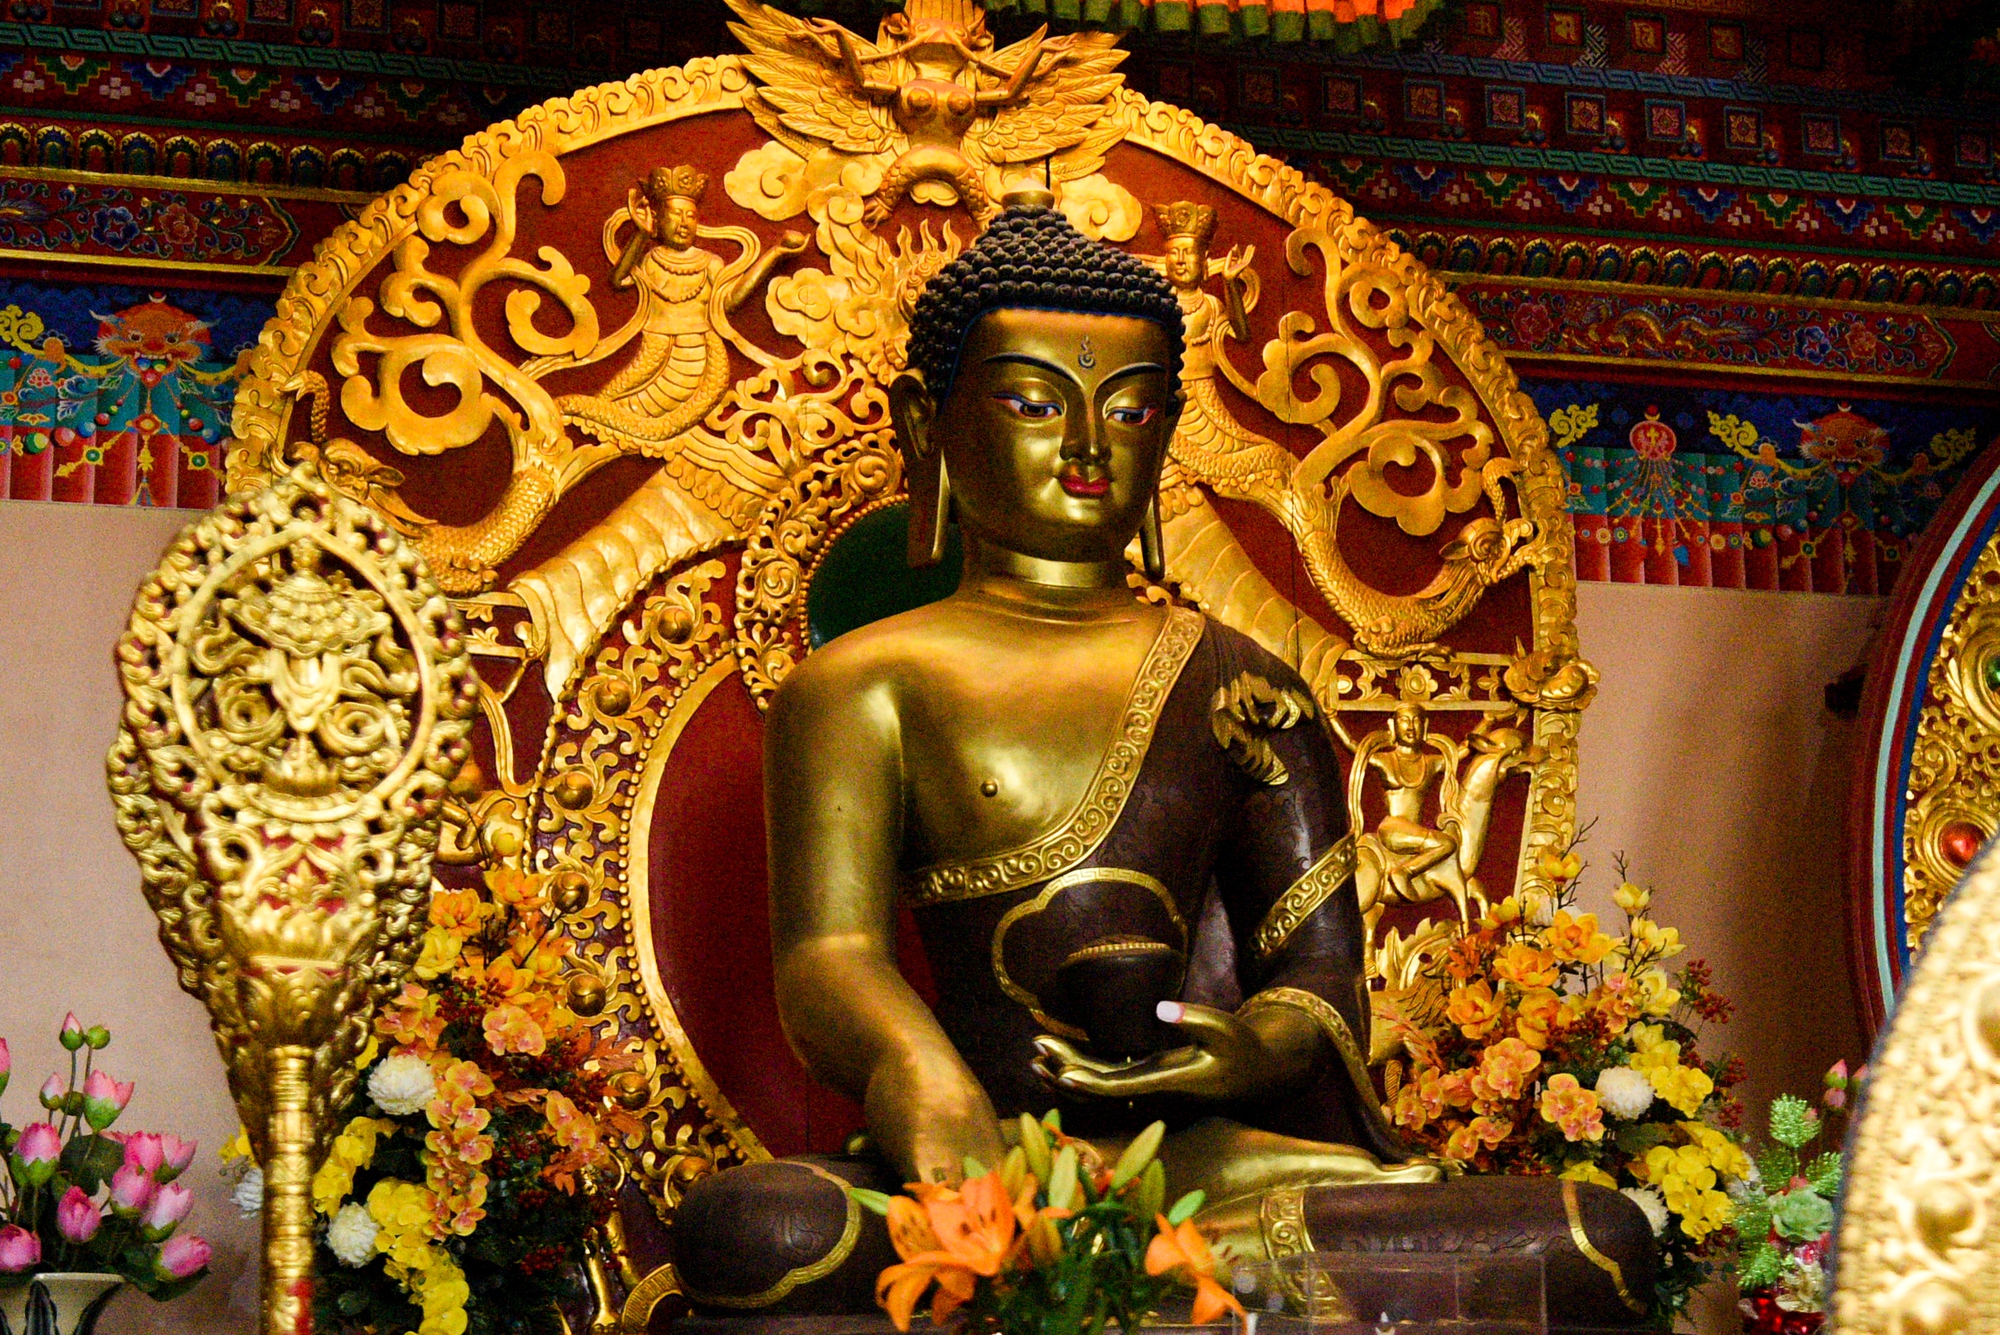 Khám phá ngôi chùa Tây Tạng 600 năm tuổi độc nhất tại Hà Nội - Ảnh 13.